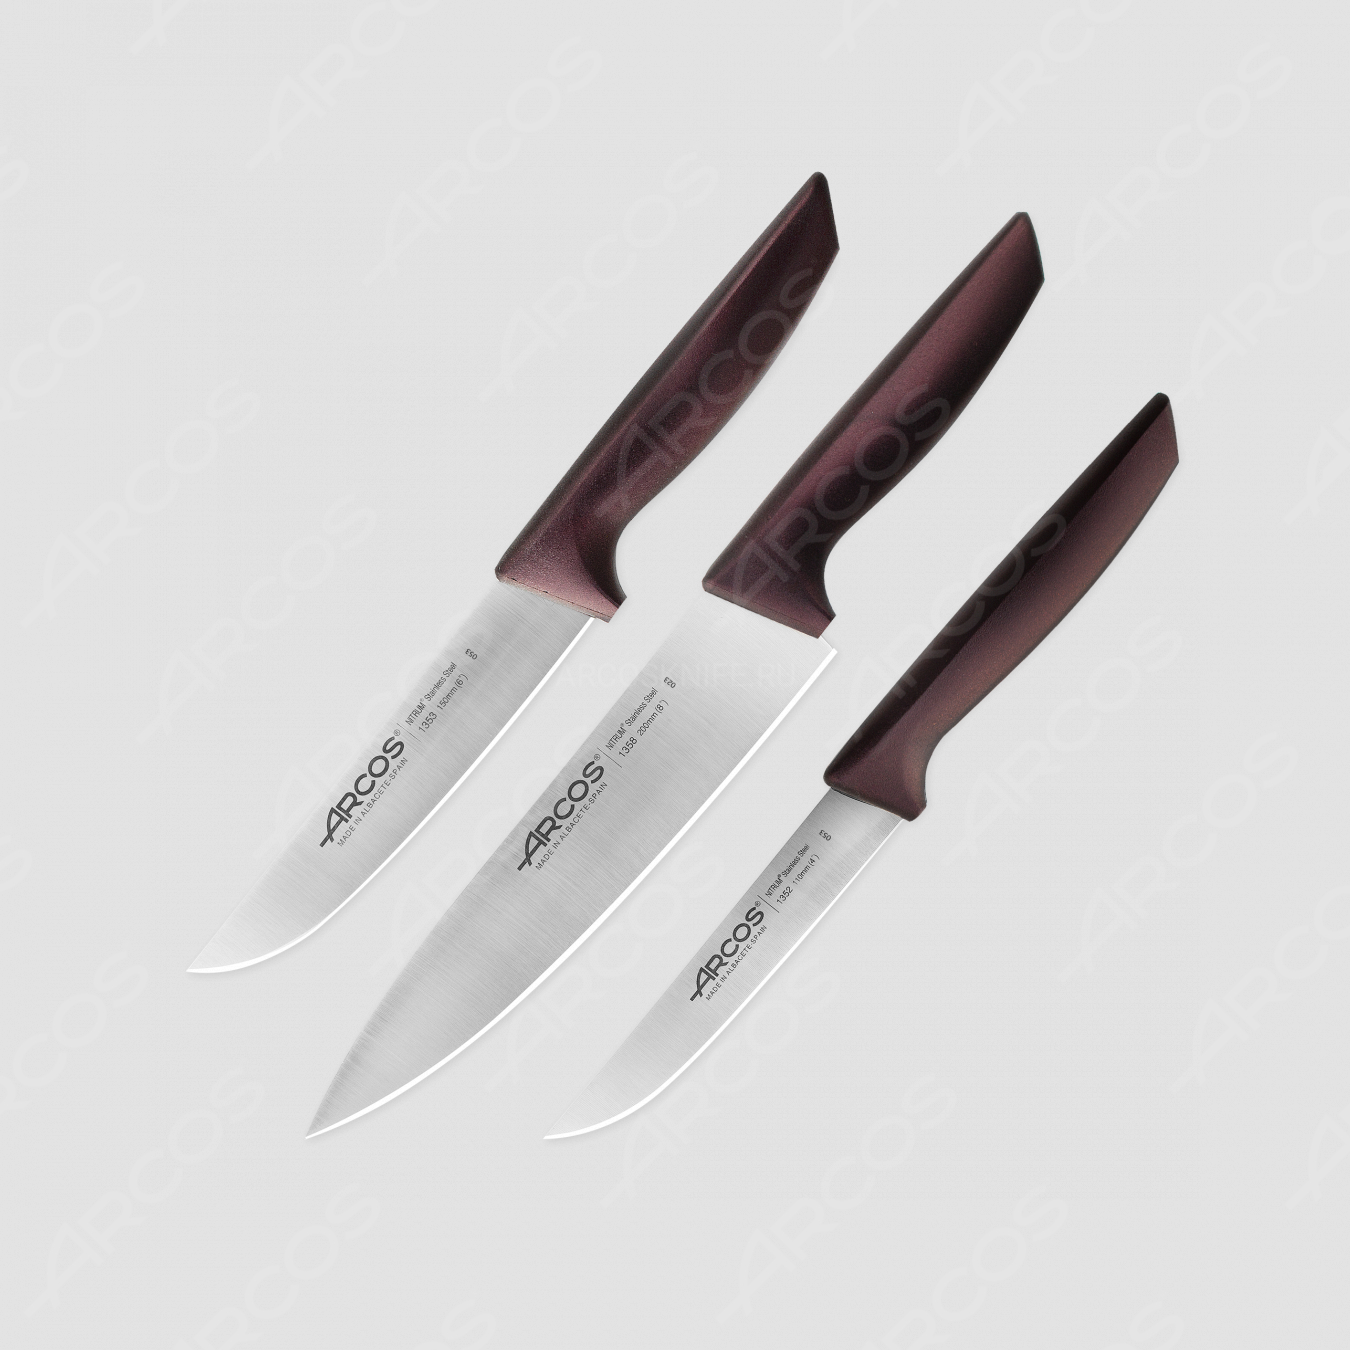 Набор кухонных ножей "поварская тройка", бордовые ручки, серия Niza, ARCOS, Испания